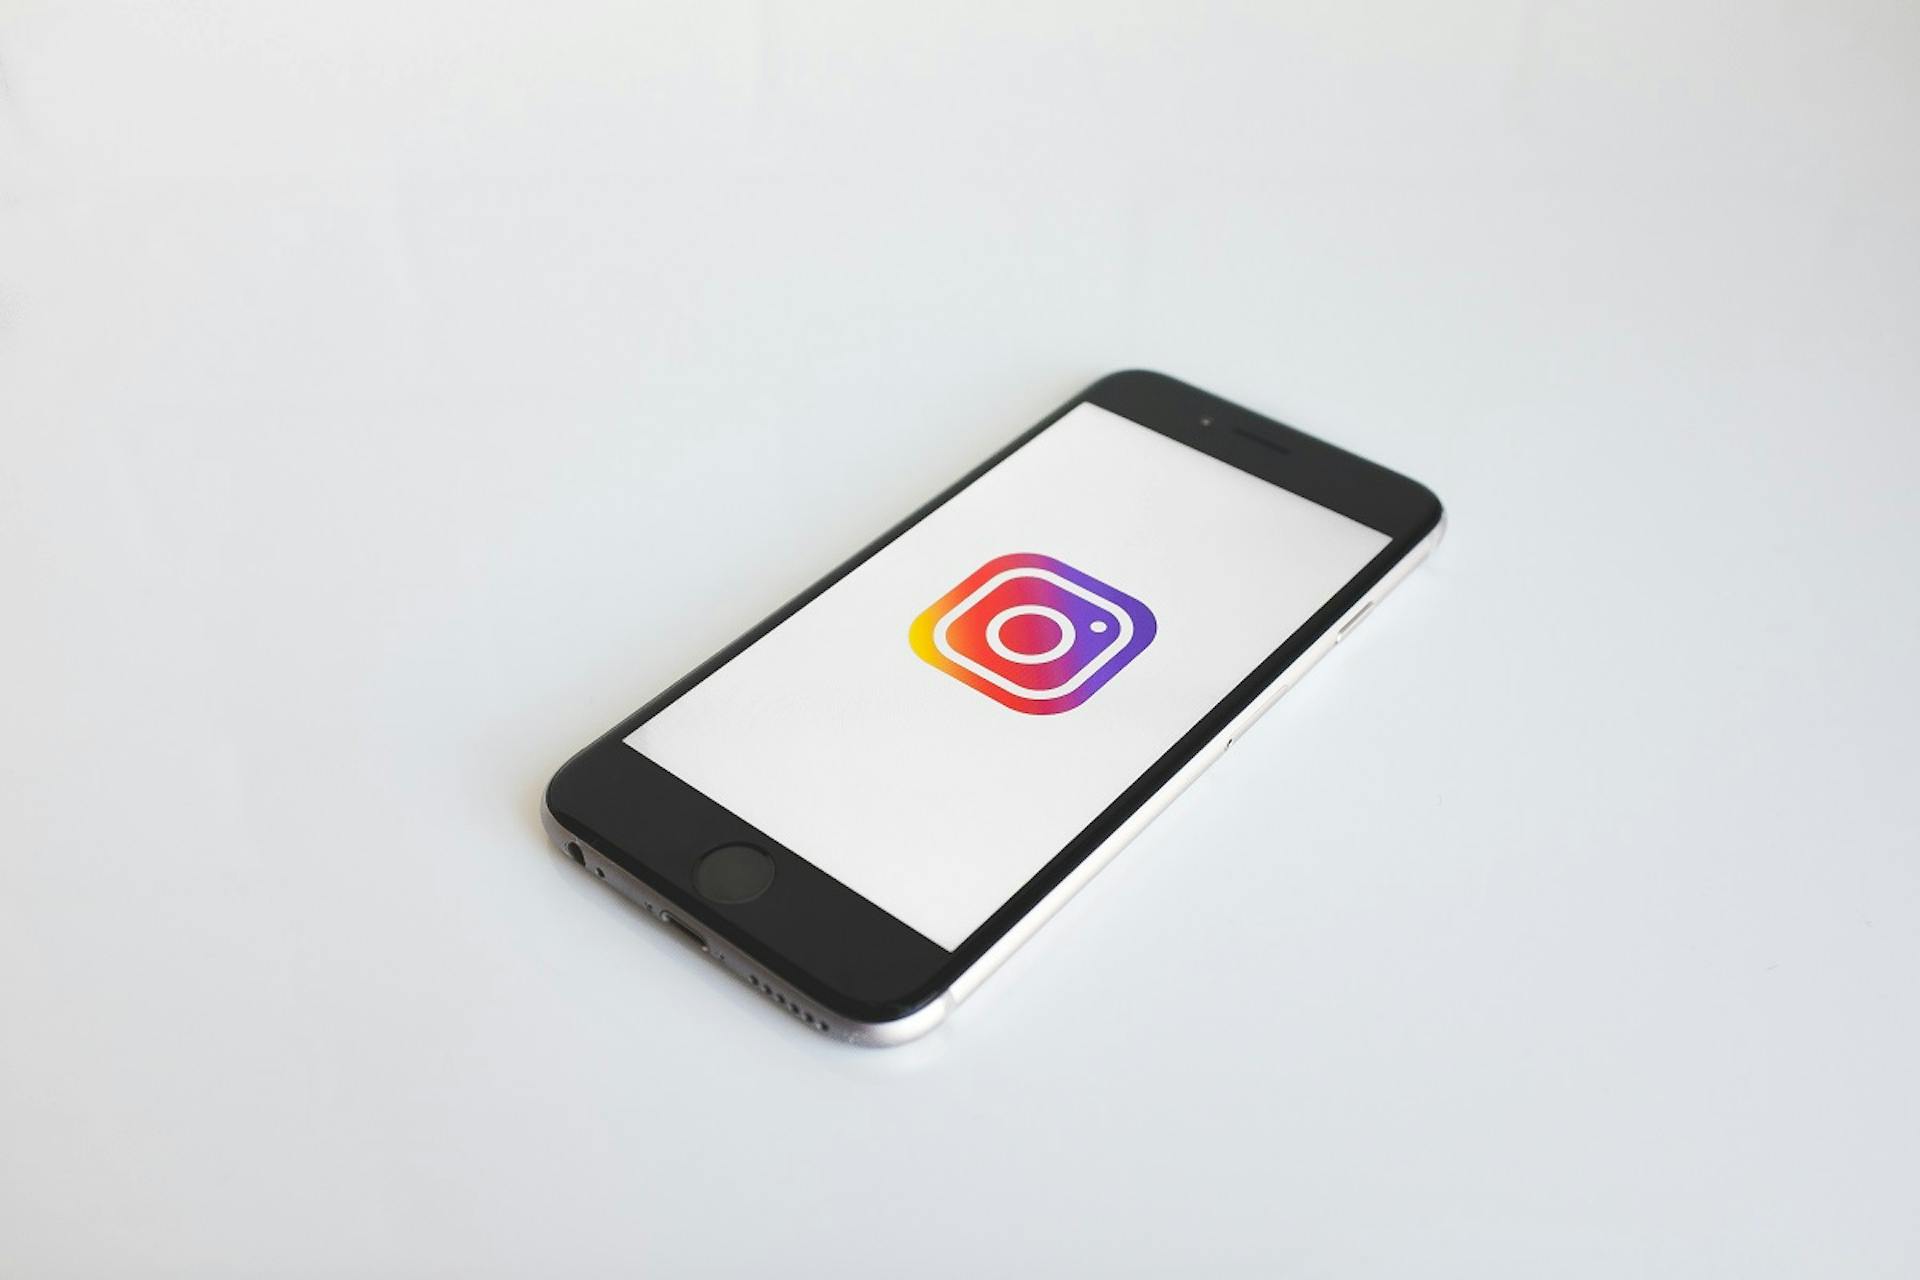 ¿Comprar seguidores en Instagram es buena idea? 5 tips para averiguarlo